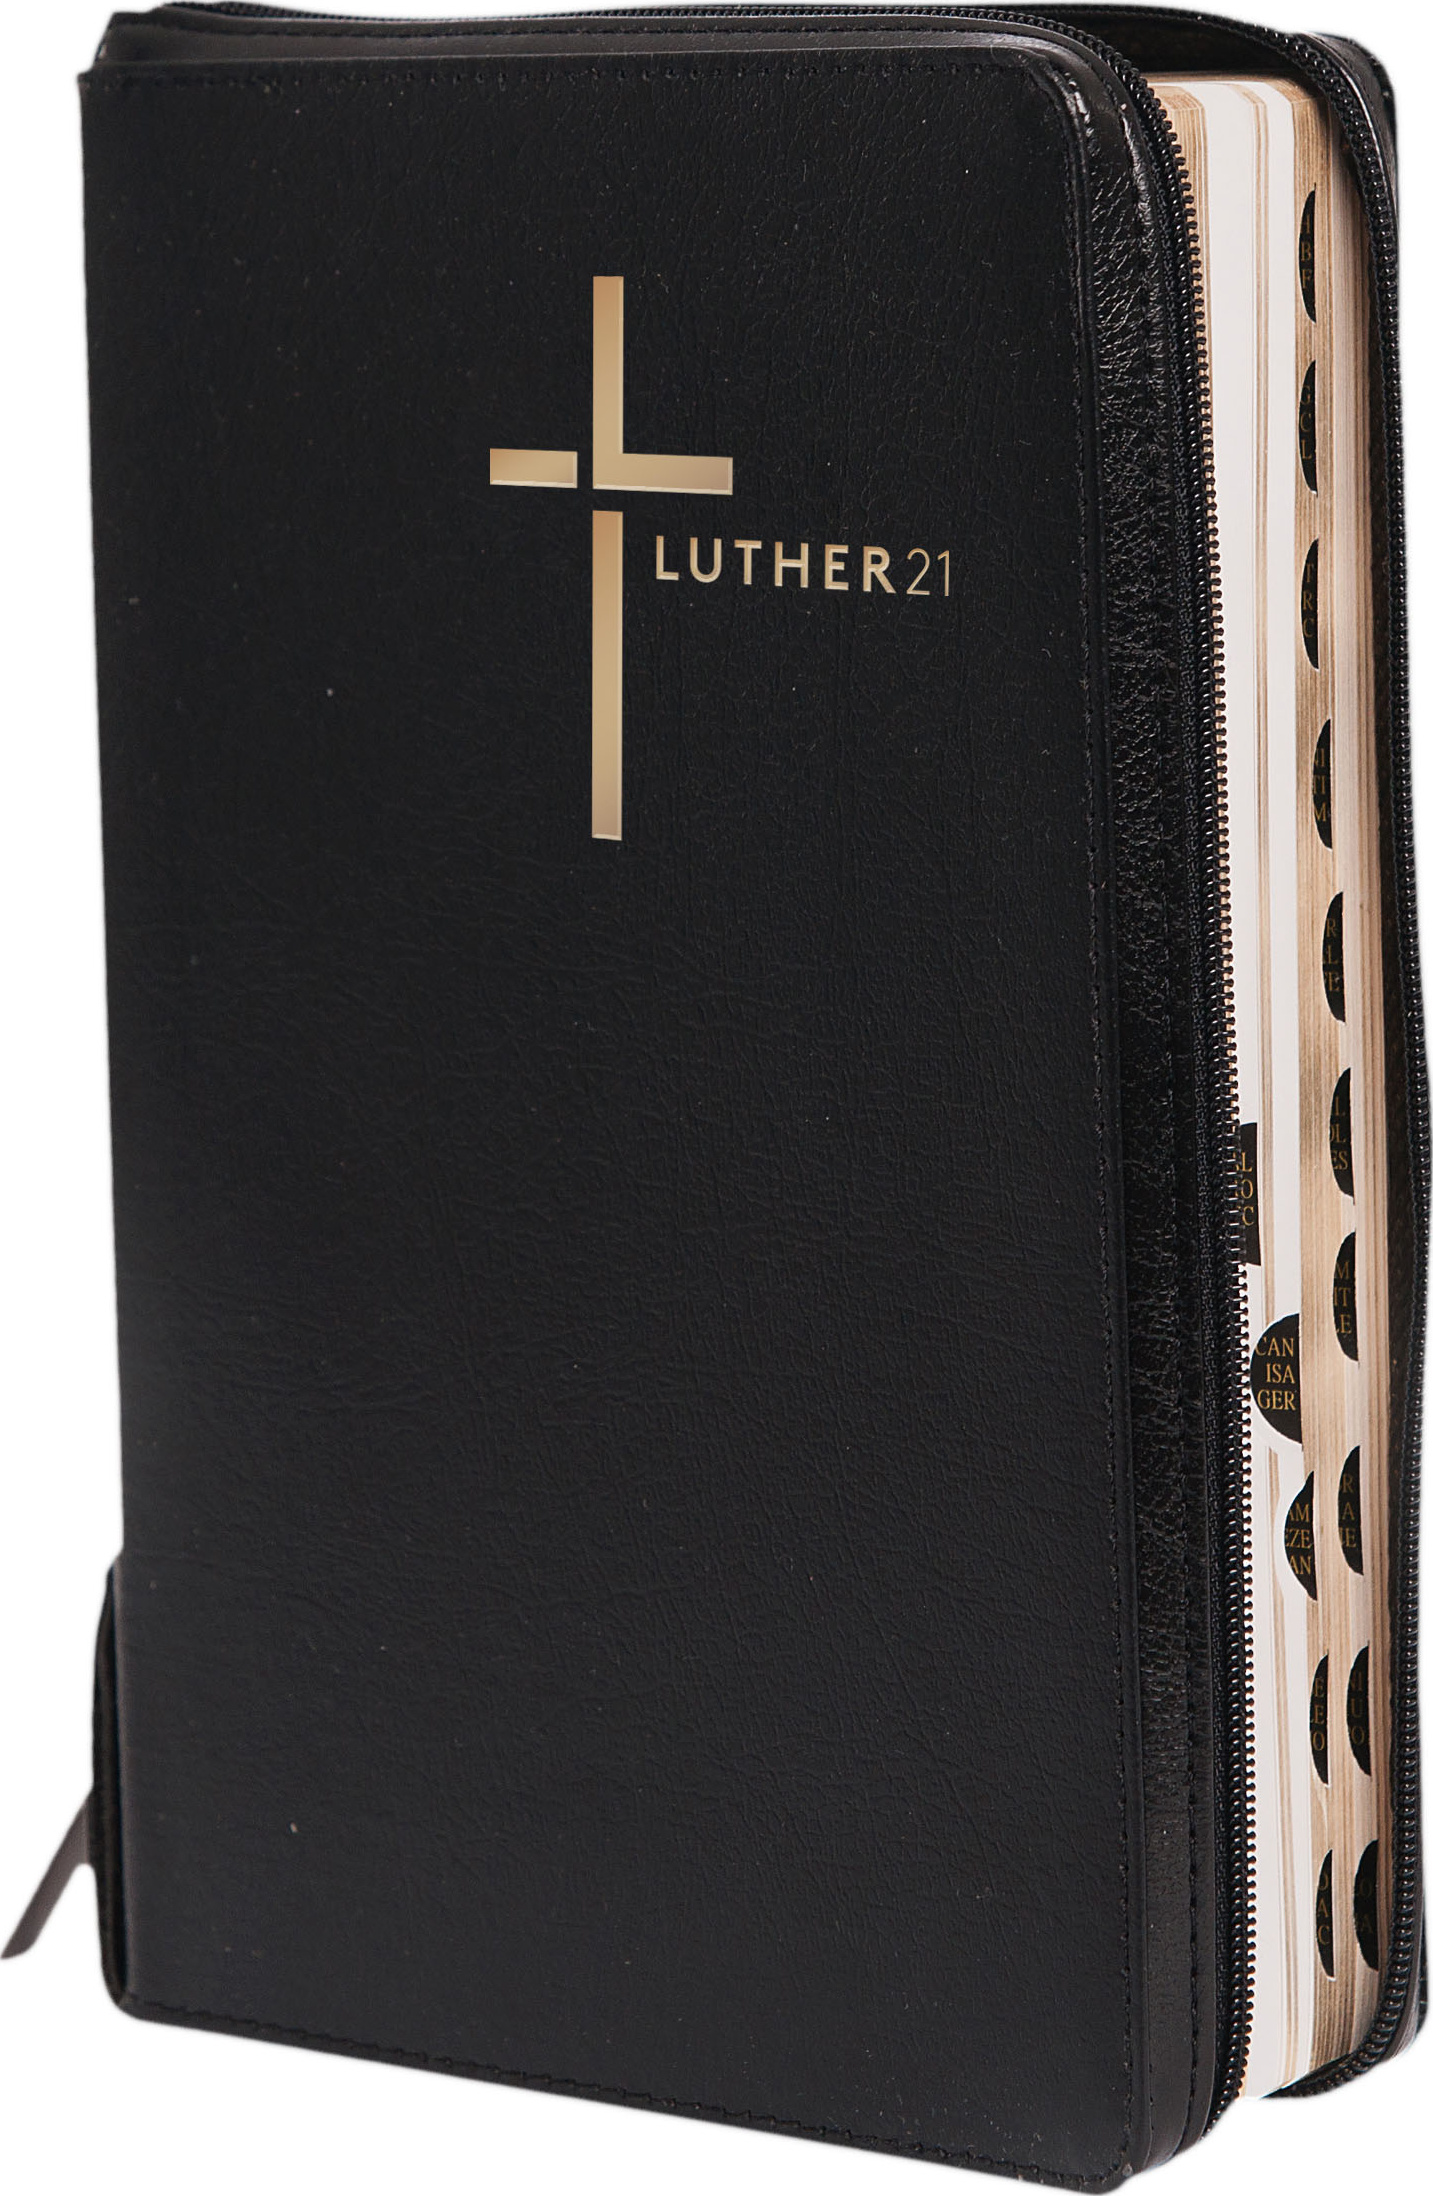 Luther21 - Standardausgabe- Lederfaserstoff, schwarz - Goldschnitt mit Register Reissverschluss